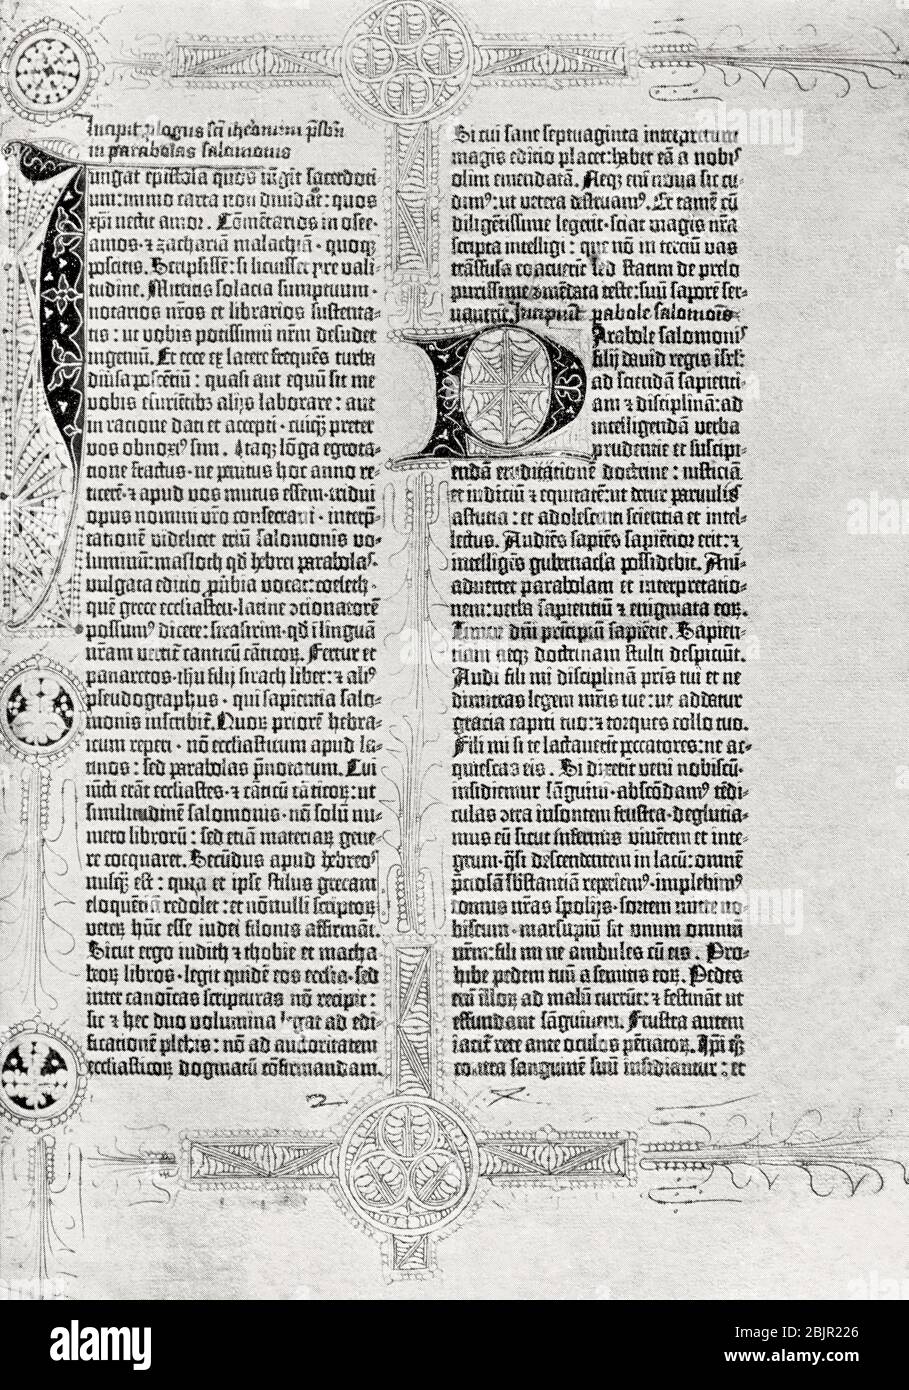 Eine Seite aus der Mazarin-Bibel. Der Druck wird Gutenberg zugeschrieben, die großen Initialen und Dekoarationen von Hand hinzugefügt. Der Text ist in Latein, und die Seite gezeigt ist aus St. Jerome's Einführung. Aus Großbritannien und ihren Nachbarn, 1485 - 1688, veröffentlicht 1923. Stockfoto